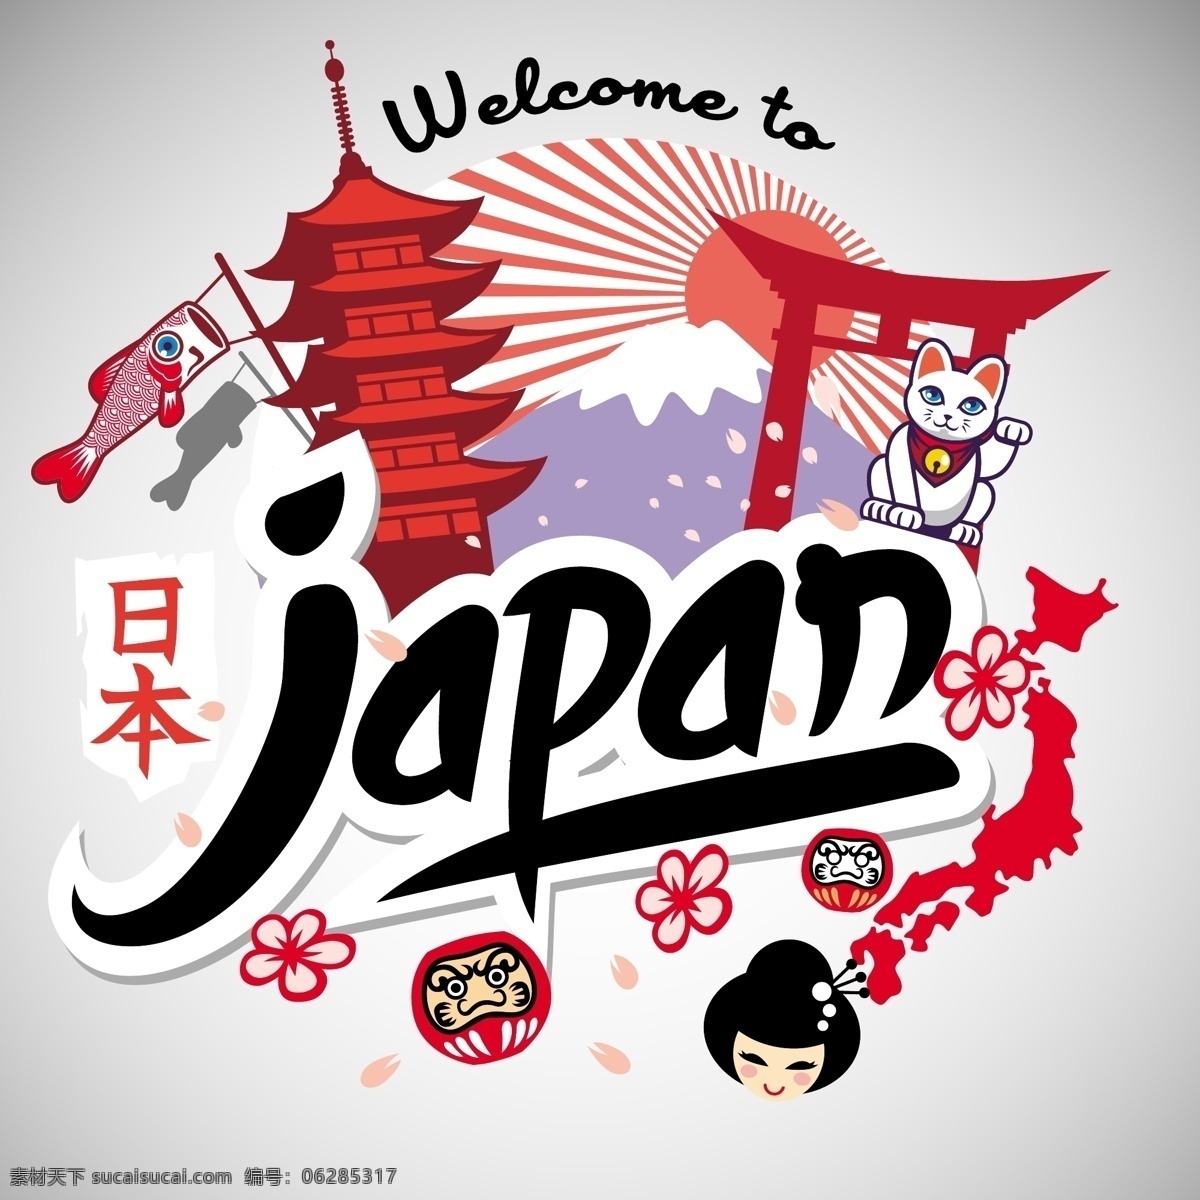 插画 风情 建筑 卡通 可爱 旅行 日本 时尚 特色 趣味